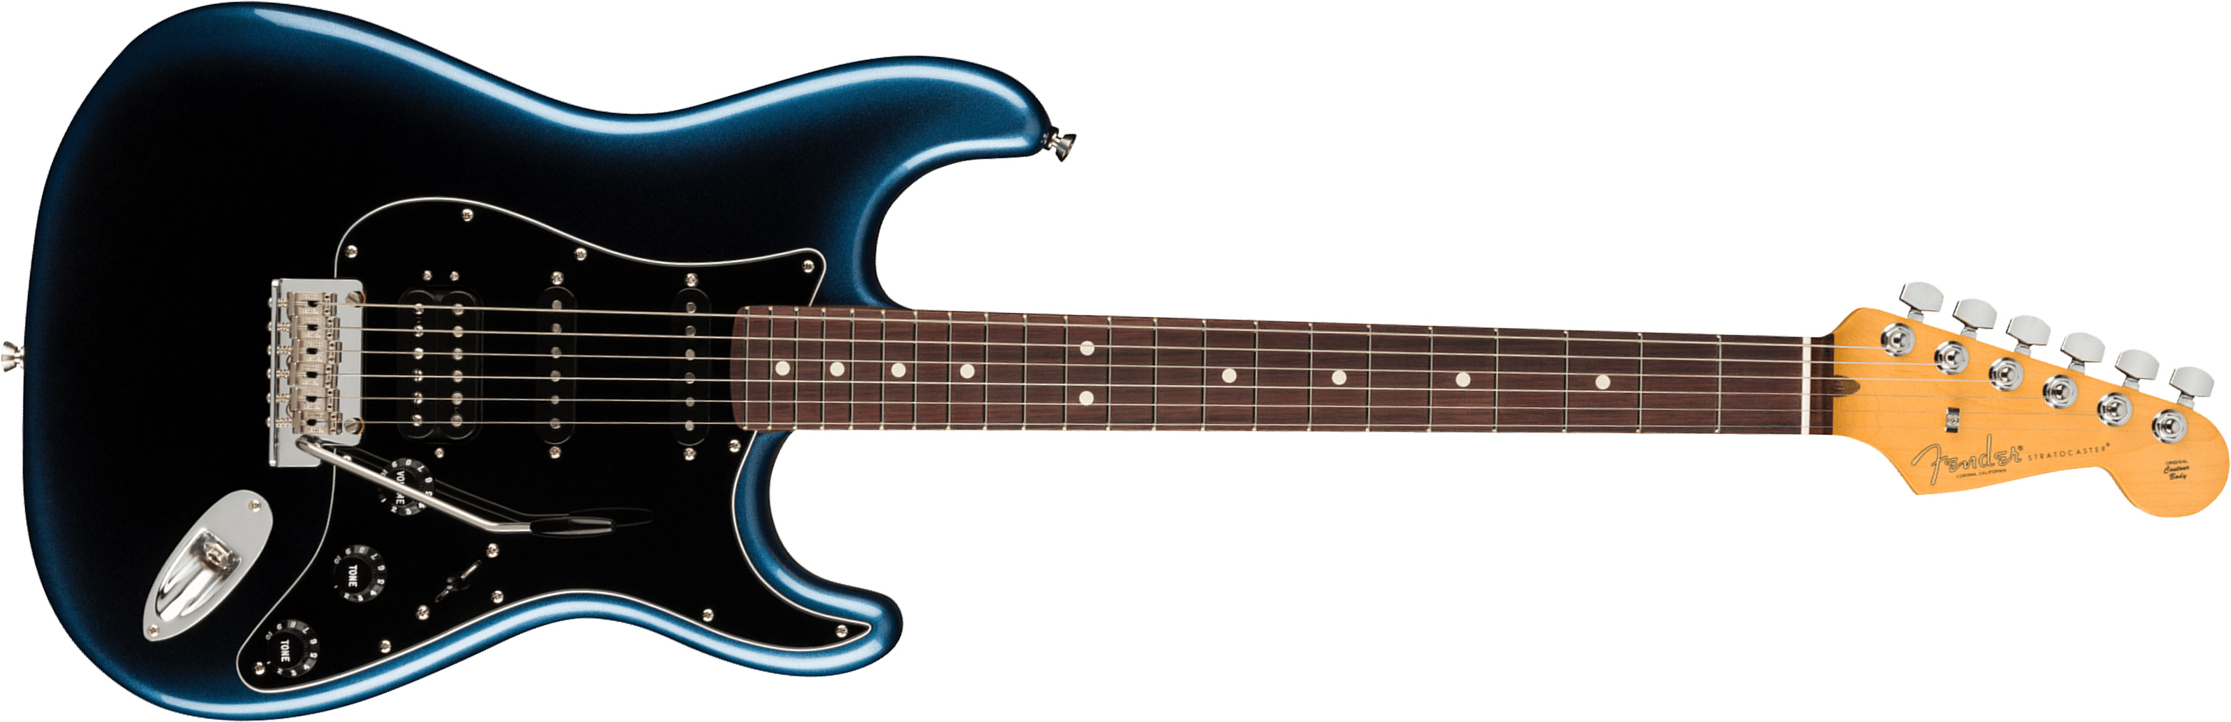 Fender Strat American Professional Ii Hss Usa Rw - Dark Night - Elektrische gitaar in Str-vorm - Main picture